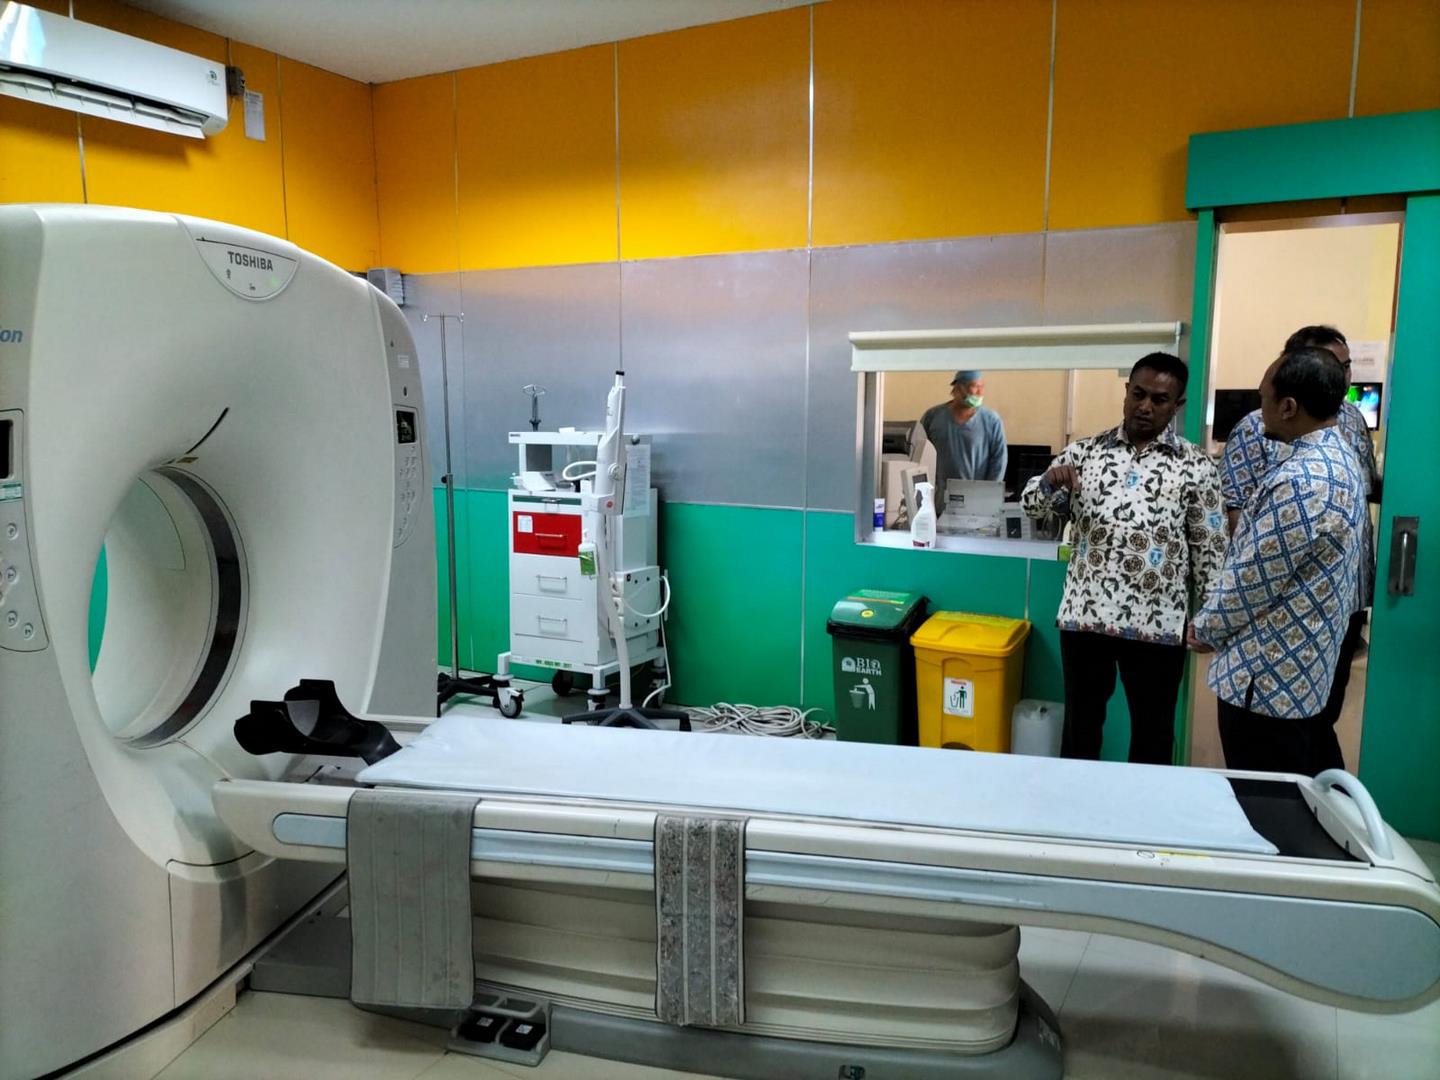 RSUD Indramayu Lakukan Giat "Belanja Masalah" di Unit Kesling (Kesehatan Lingkungan), Instalasi Radiologi, dan Laboratorium Central